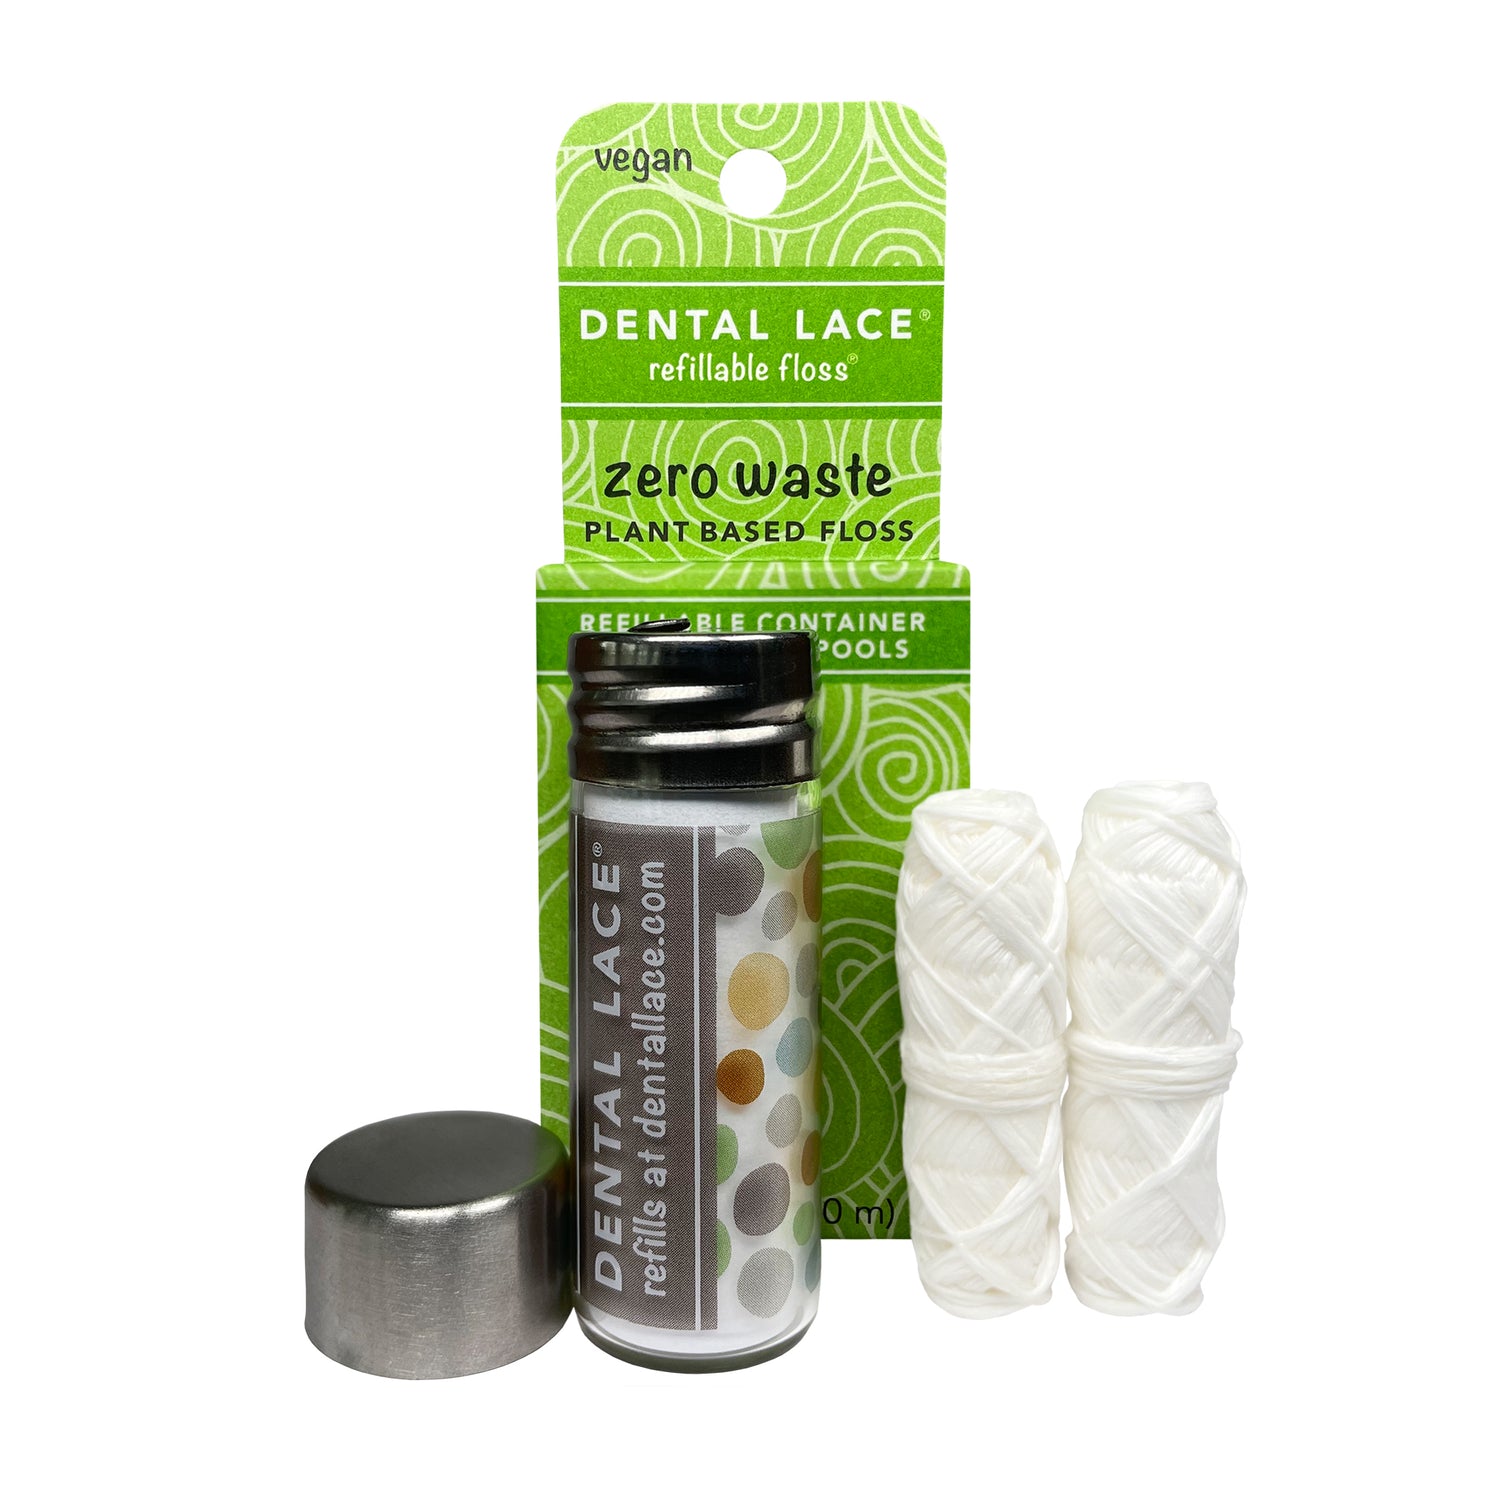 Sample oral care kits